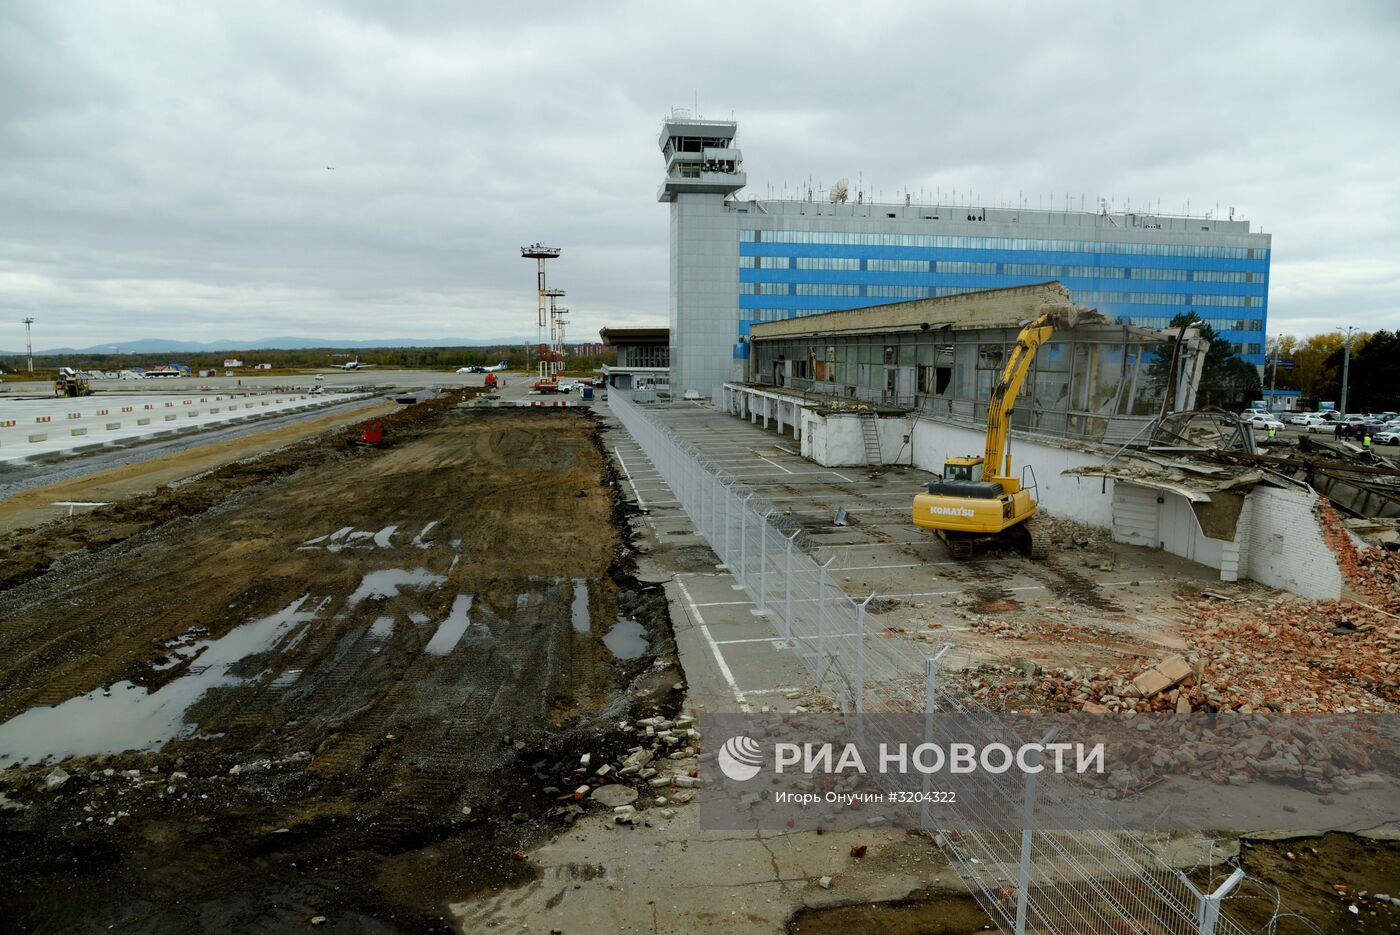 Реконструкция аэродромного комплекса "Новый" в Хабаровске